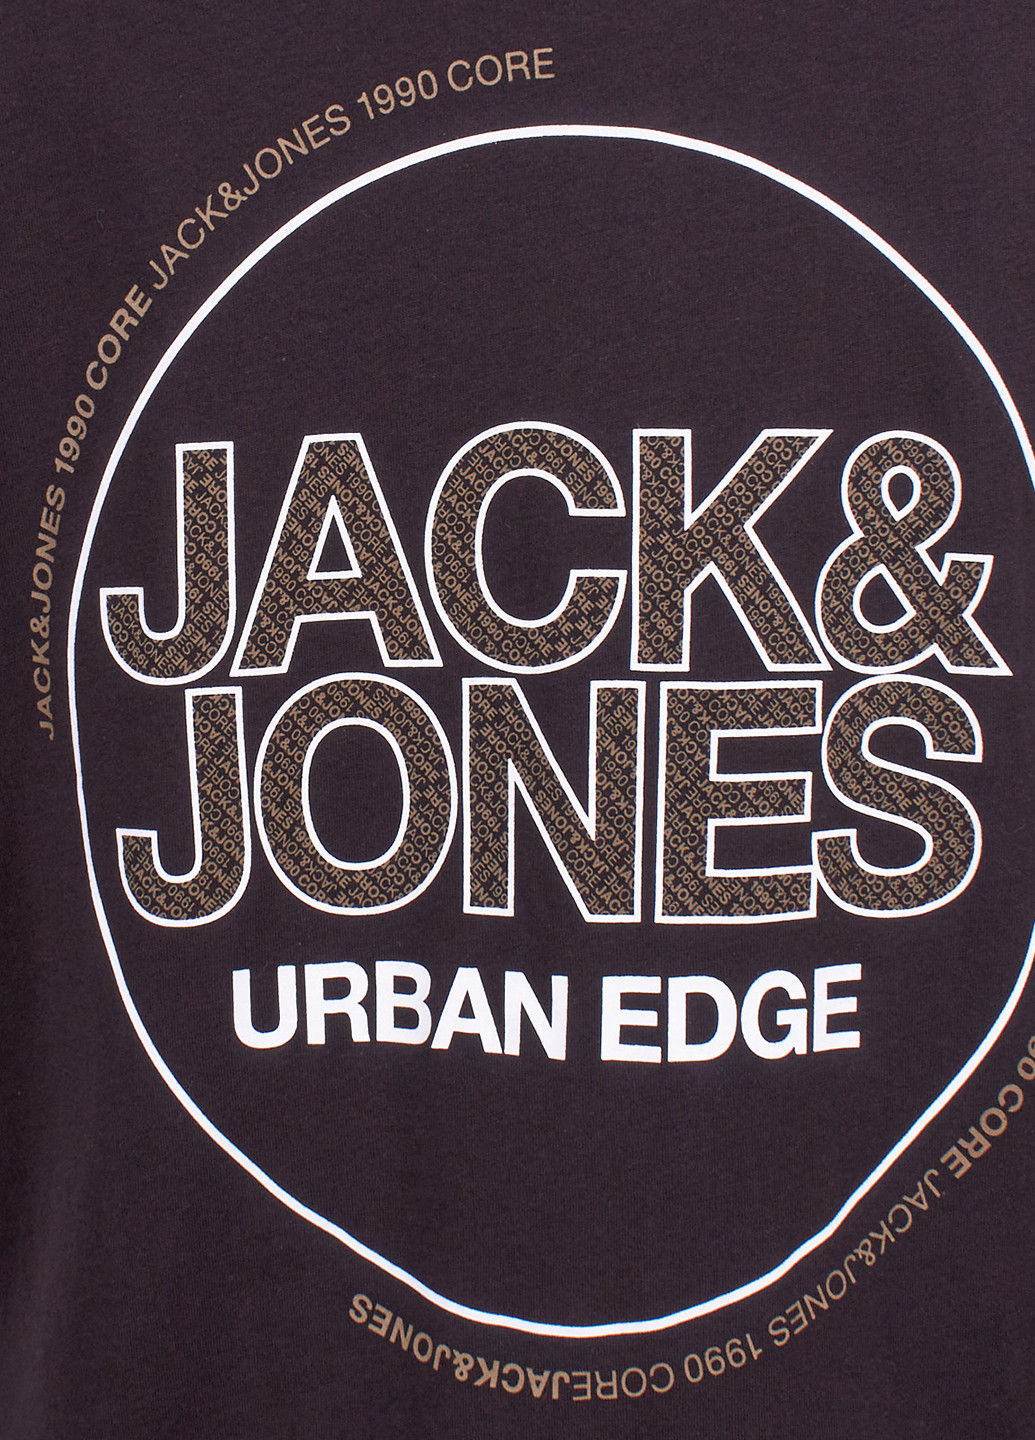 Черная футболка Jack & Jones